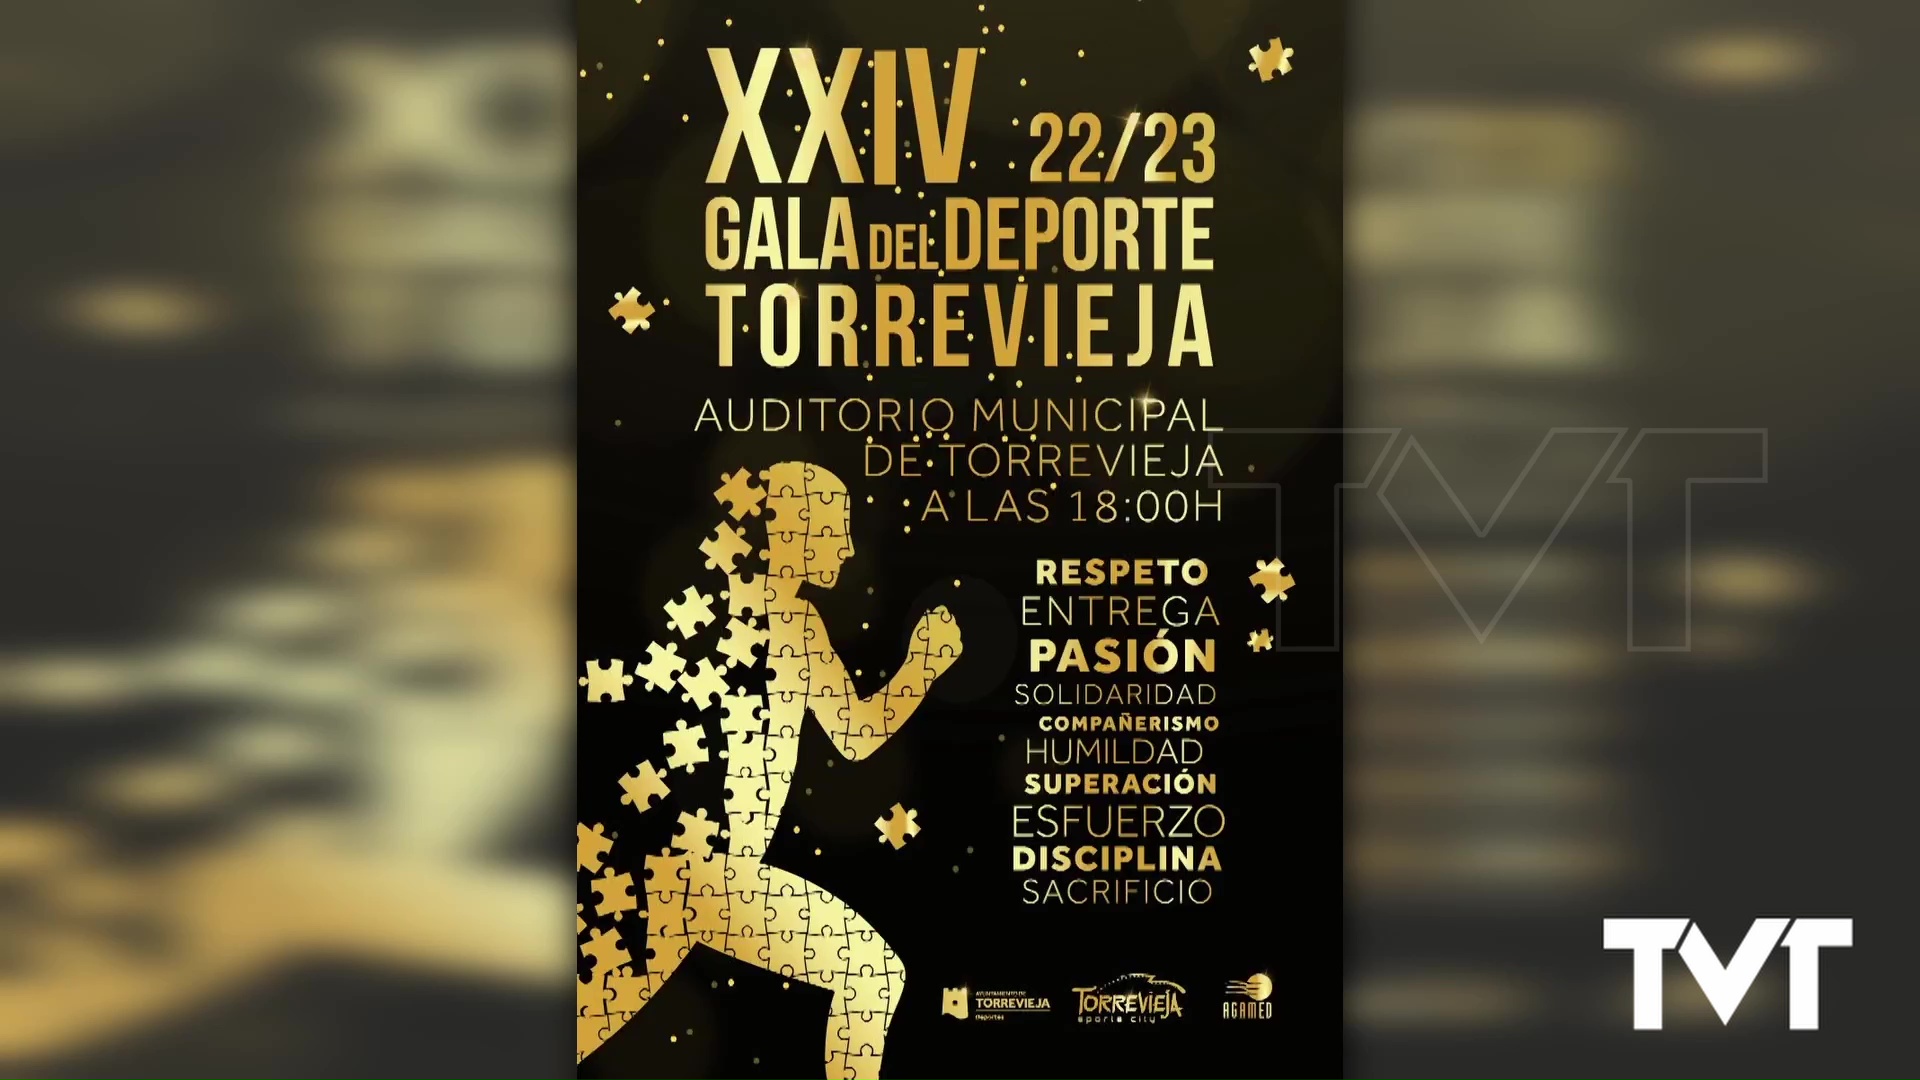 Imagen de Este domingo, 21 de enero, se celebra la vigésimo cuarta edición de la Gala del deporte de Torreviej